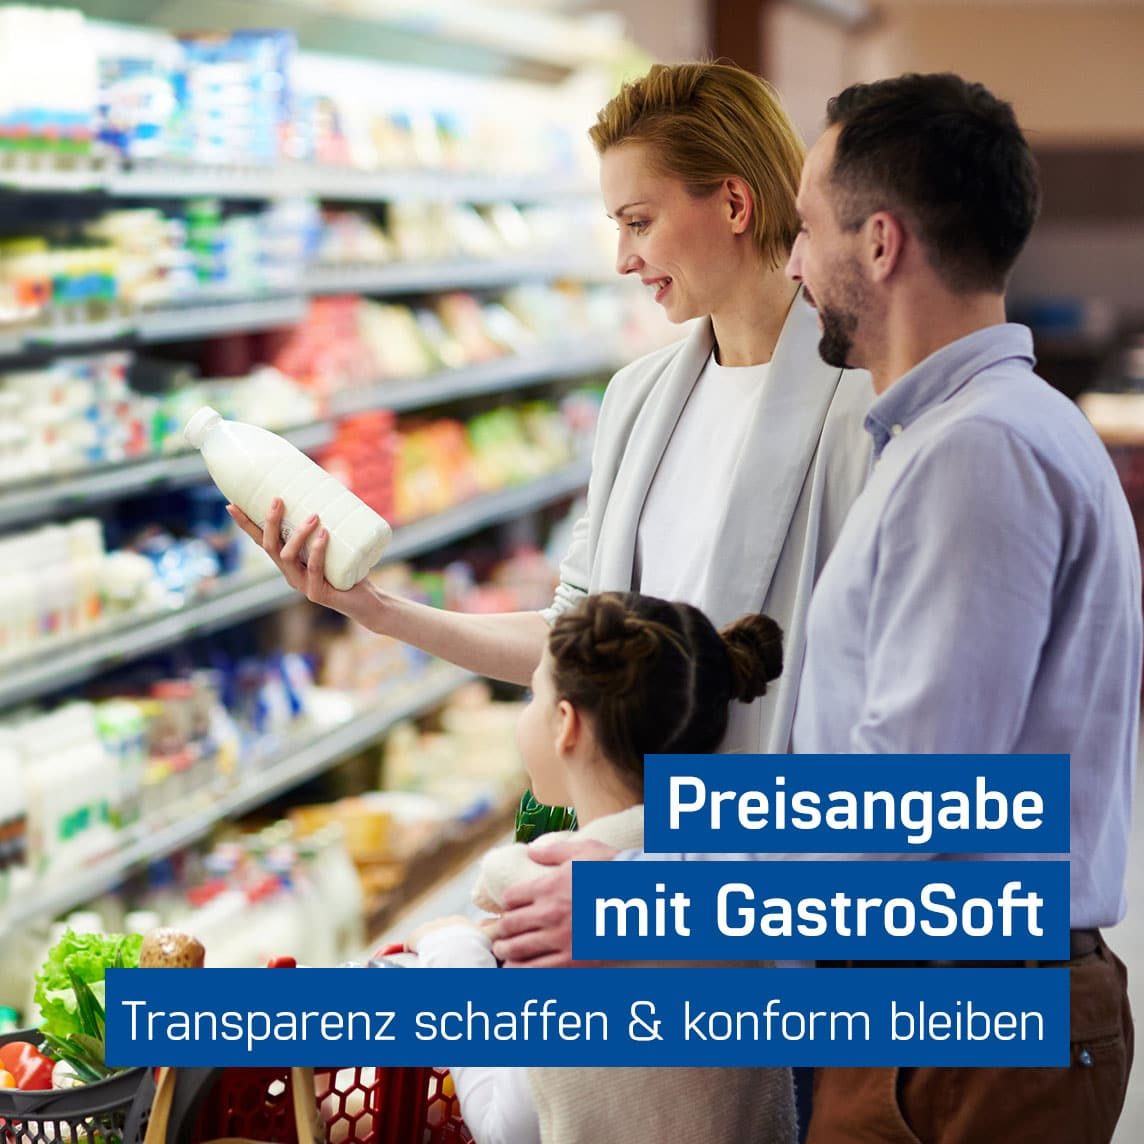 Familie erhält Transparenz im Supermarkt durch Einhaltung der Preisangabenverordnung